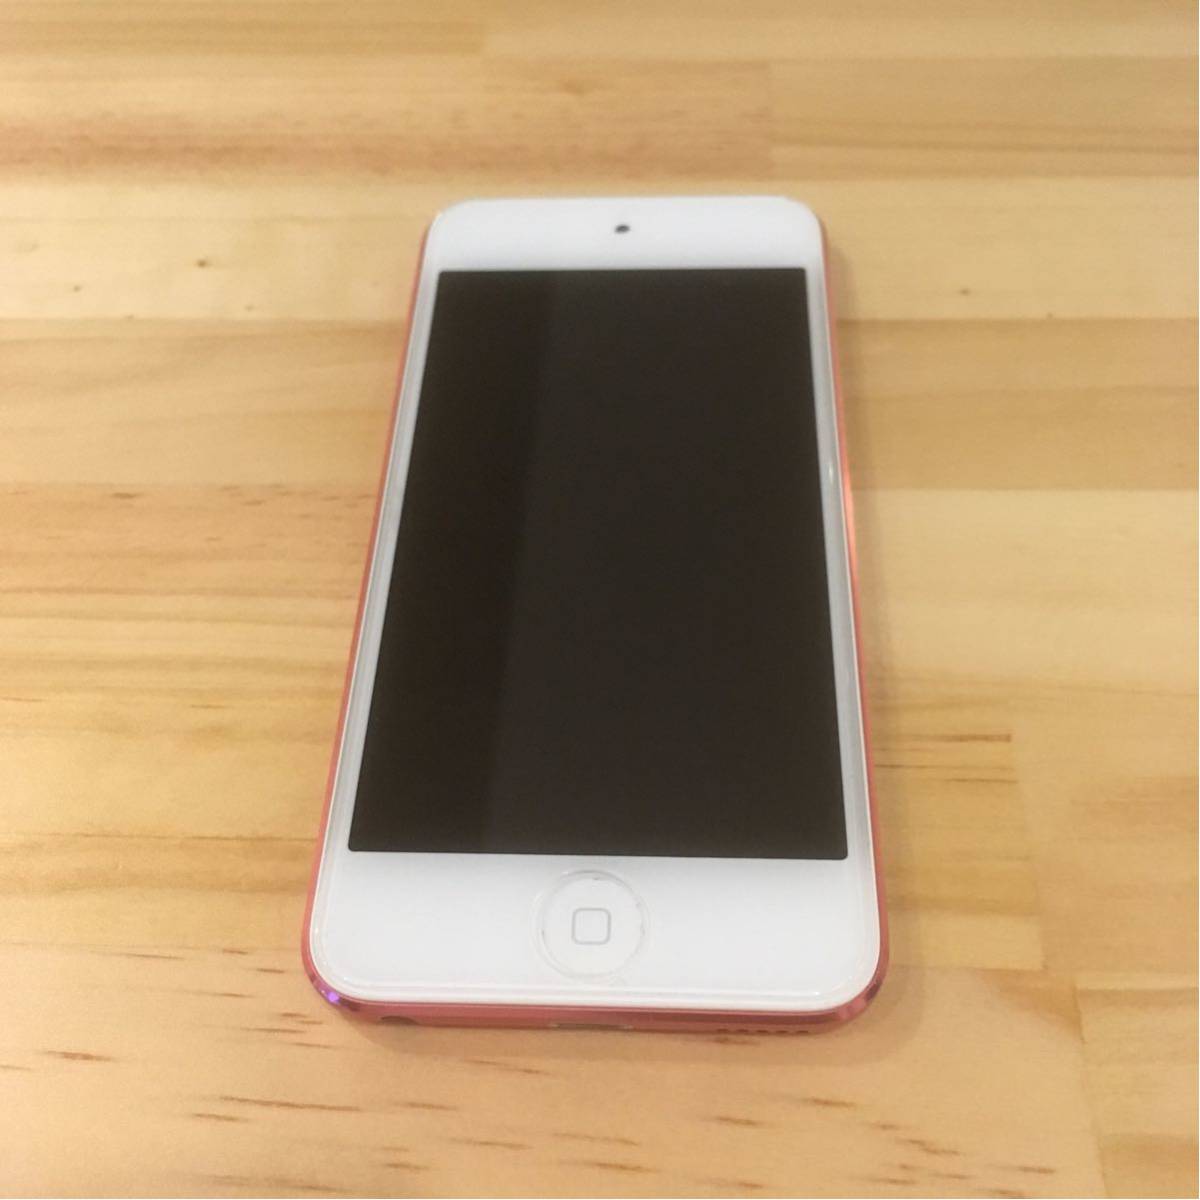  原文:美品 Apple iPod touch 第5世代 第6世代 32GB ピンク A1421 送料無料 